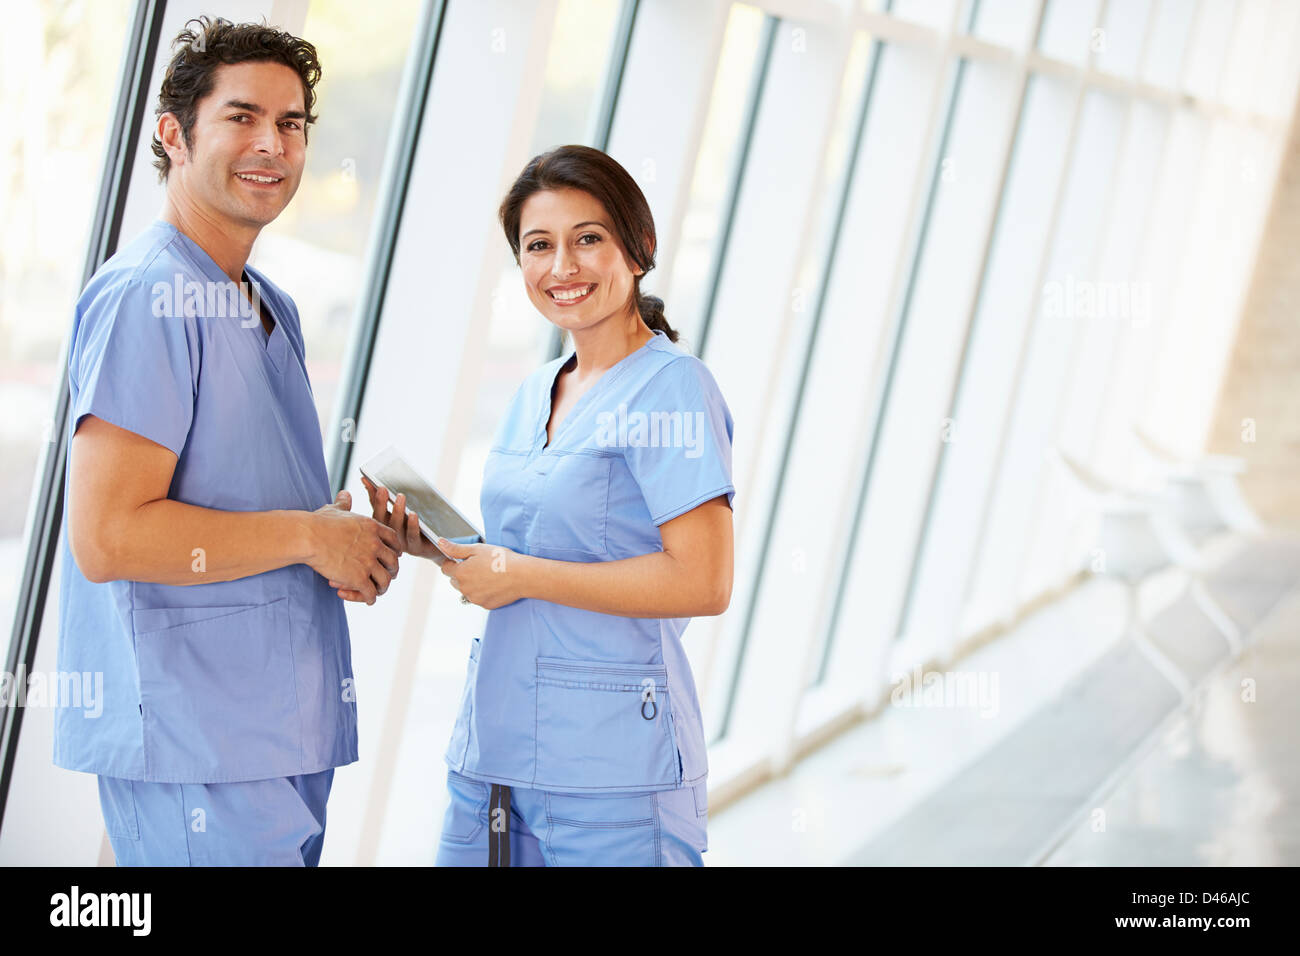 Hablando de personal médico en el Hospital corredor con tableta digital Foto de stock